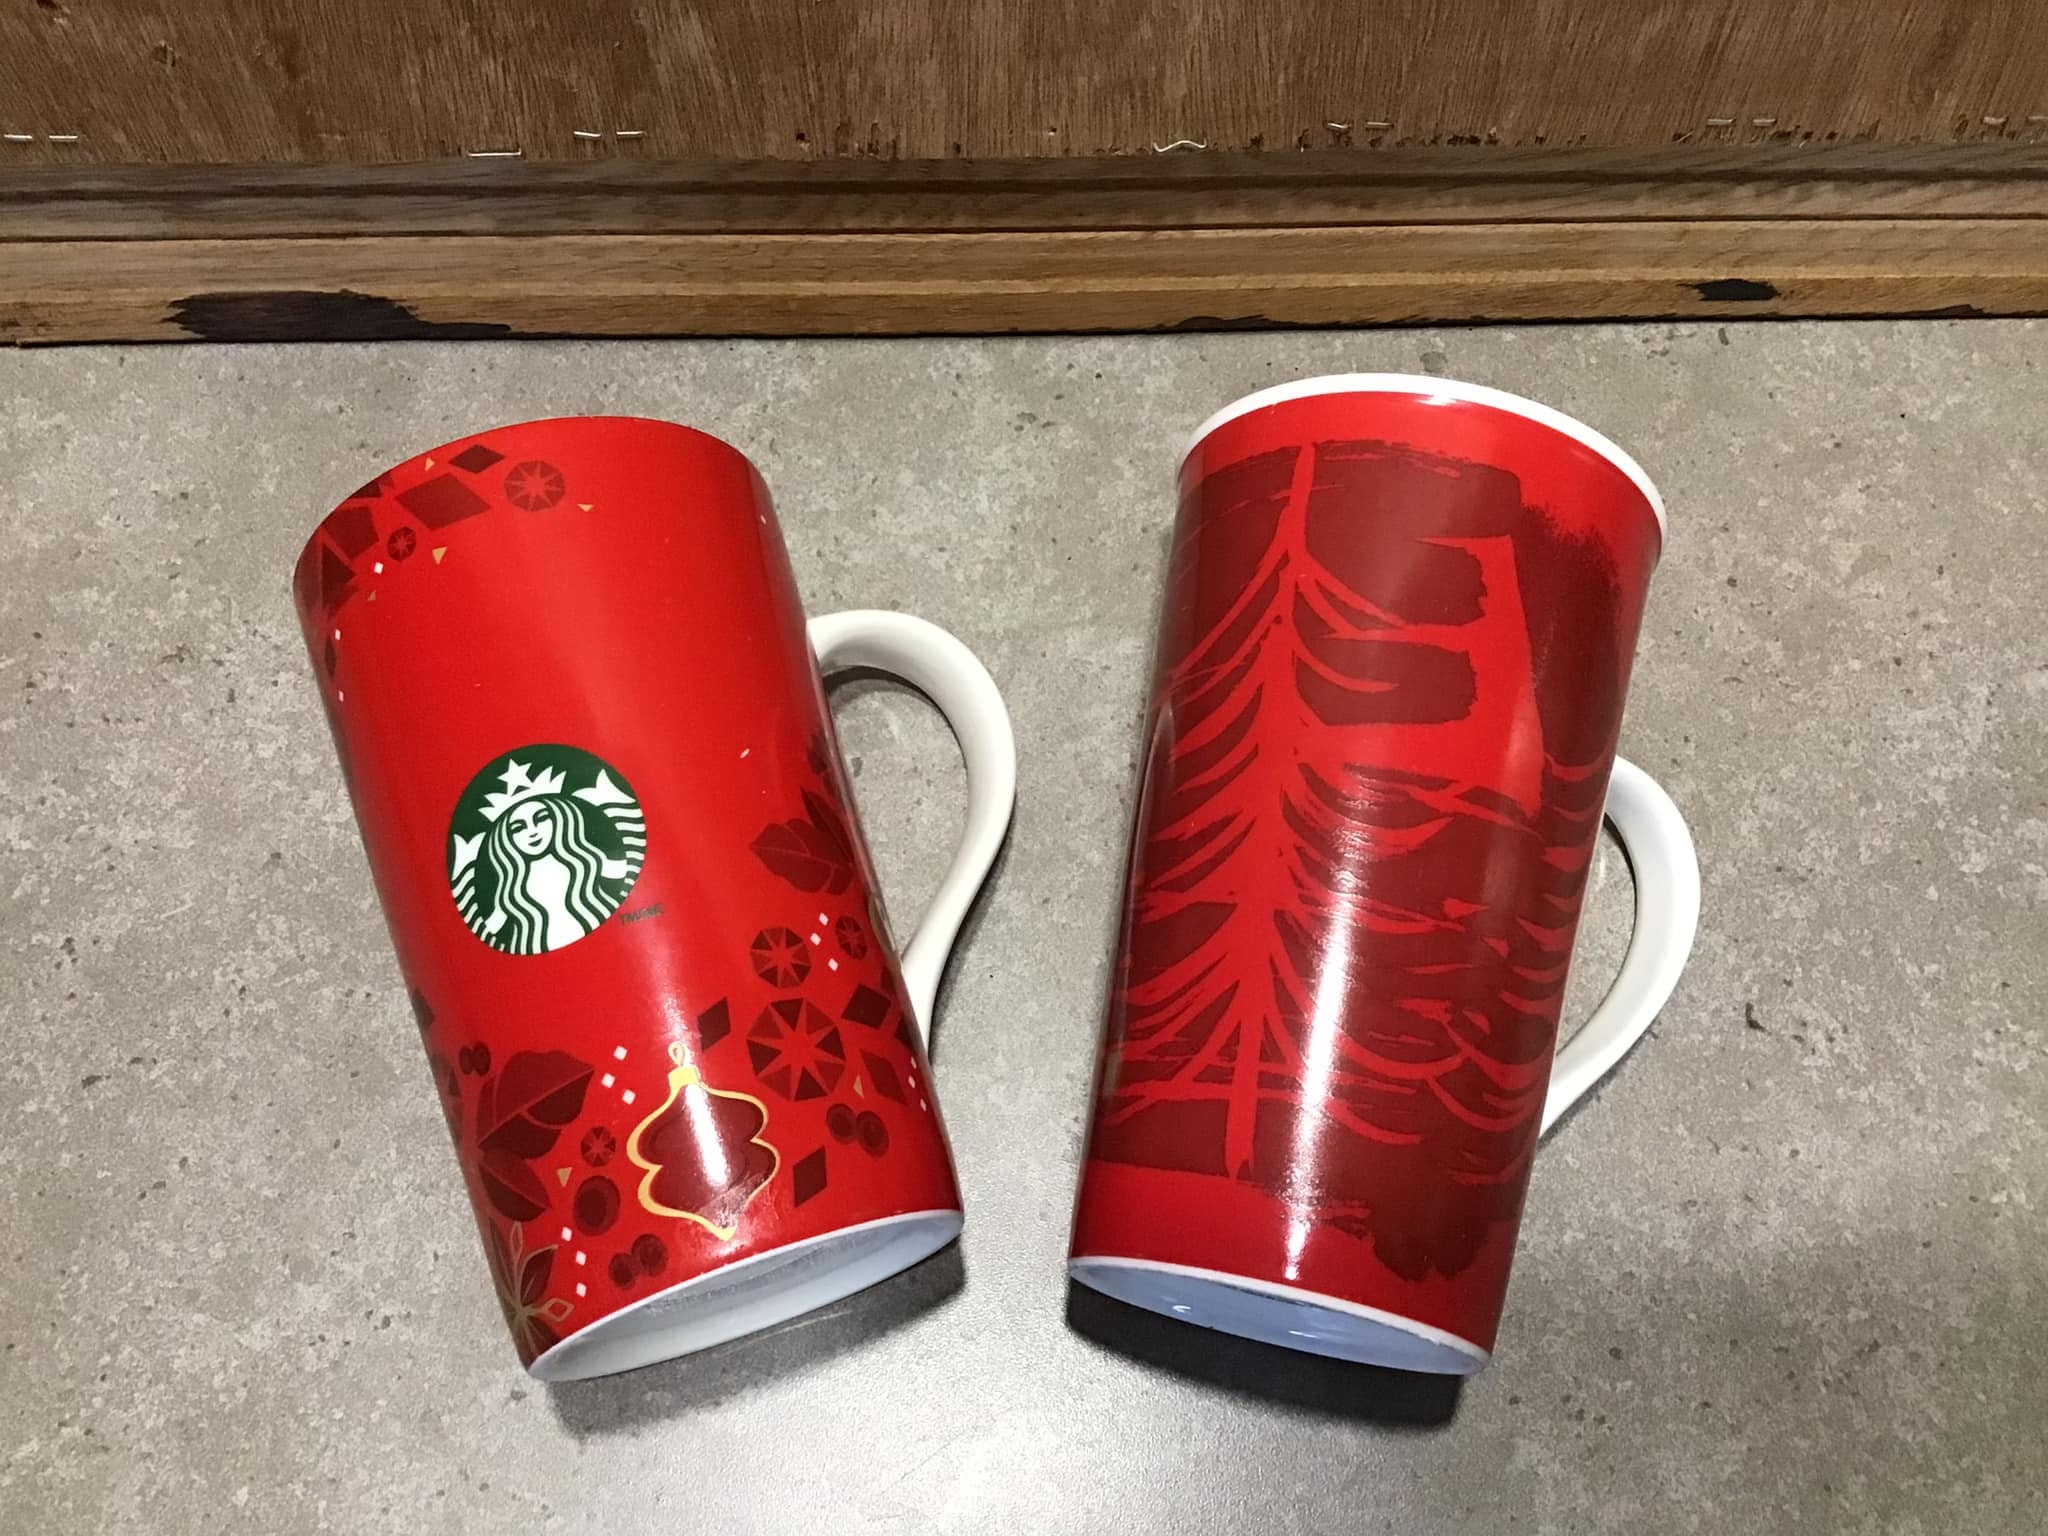 Set of 2 Starbucks Mugs, Starbucks Red Coffee Mugs 